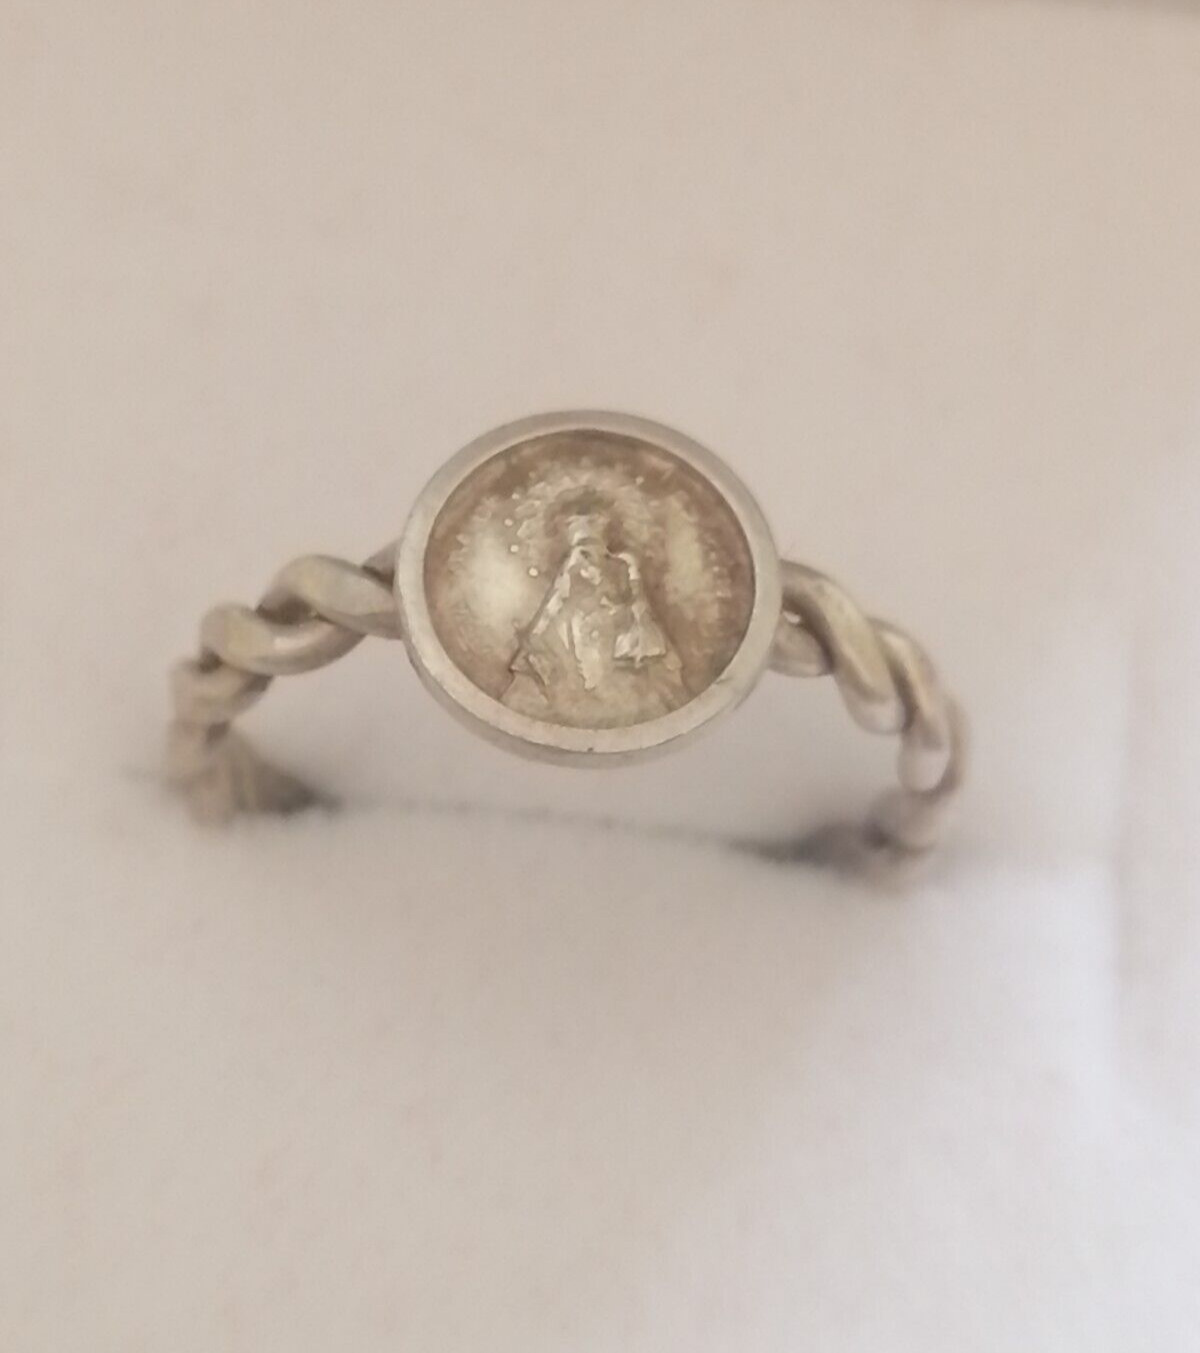 Vtg Solid Silver Christian Religious Handmade Ring Size 4.5 1.4g